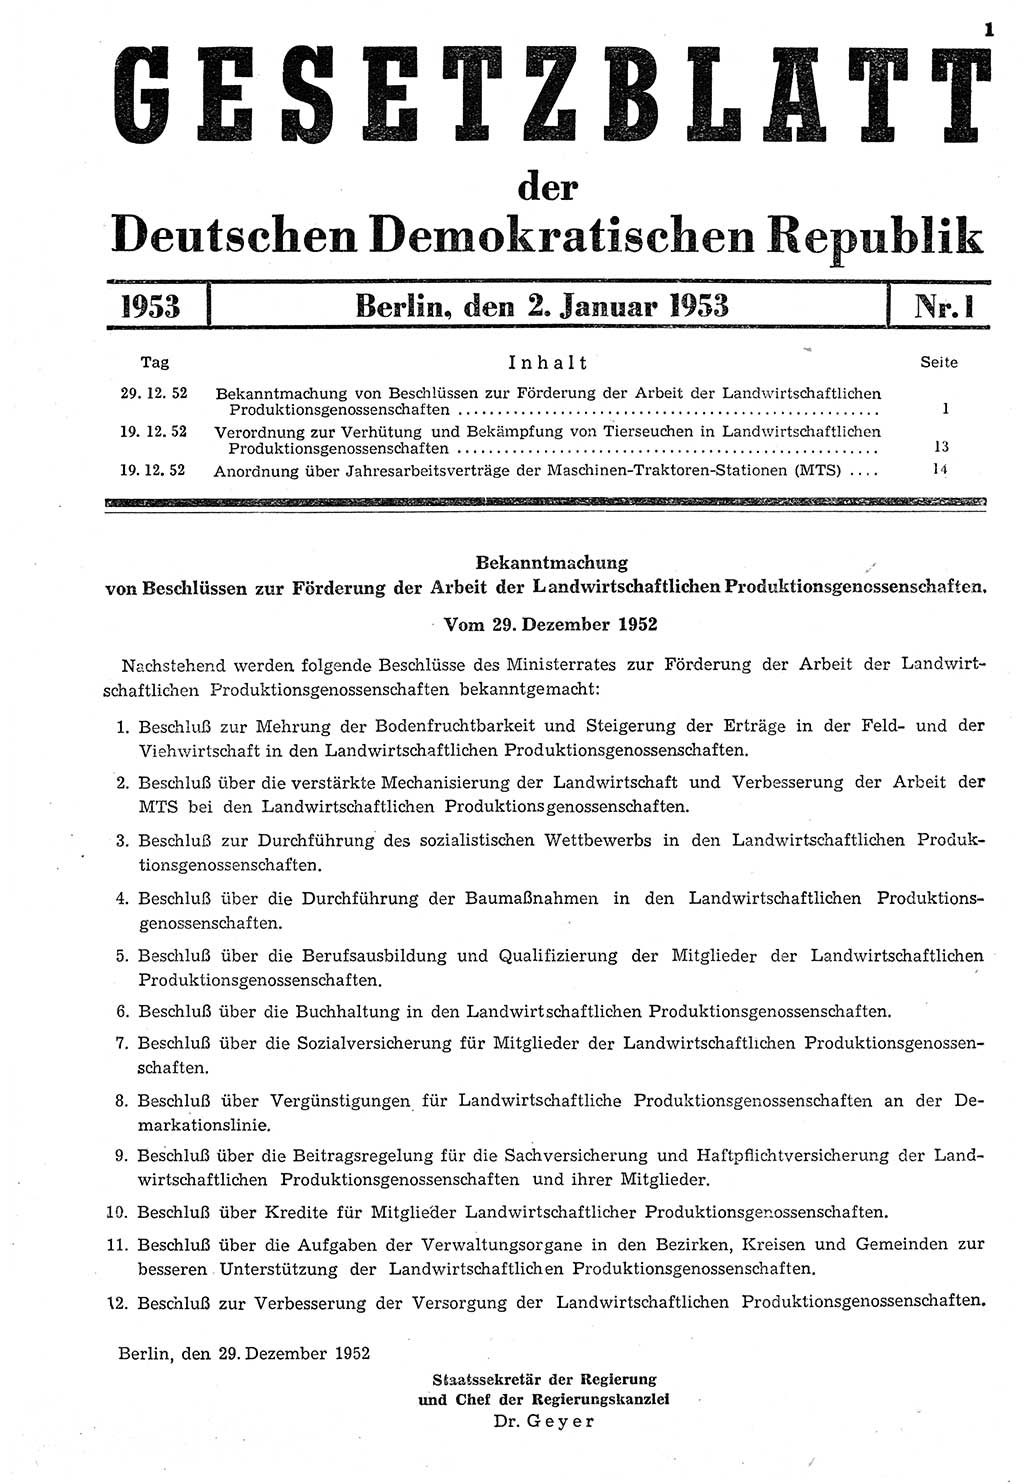 Gesetzblatt (GBl.) der Deutschen Demokratischen Republik (DDR) 1953, Seite 1 (GBl. DDR 1953, S. 1)